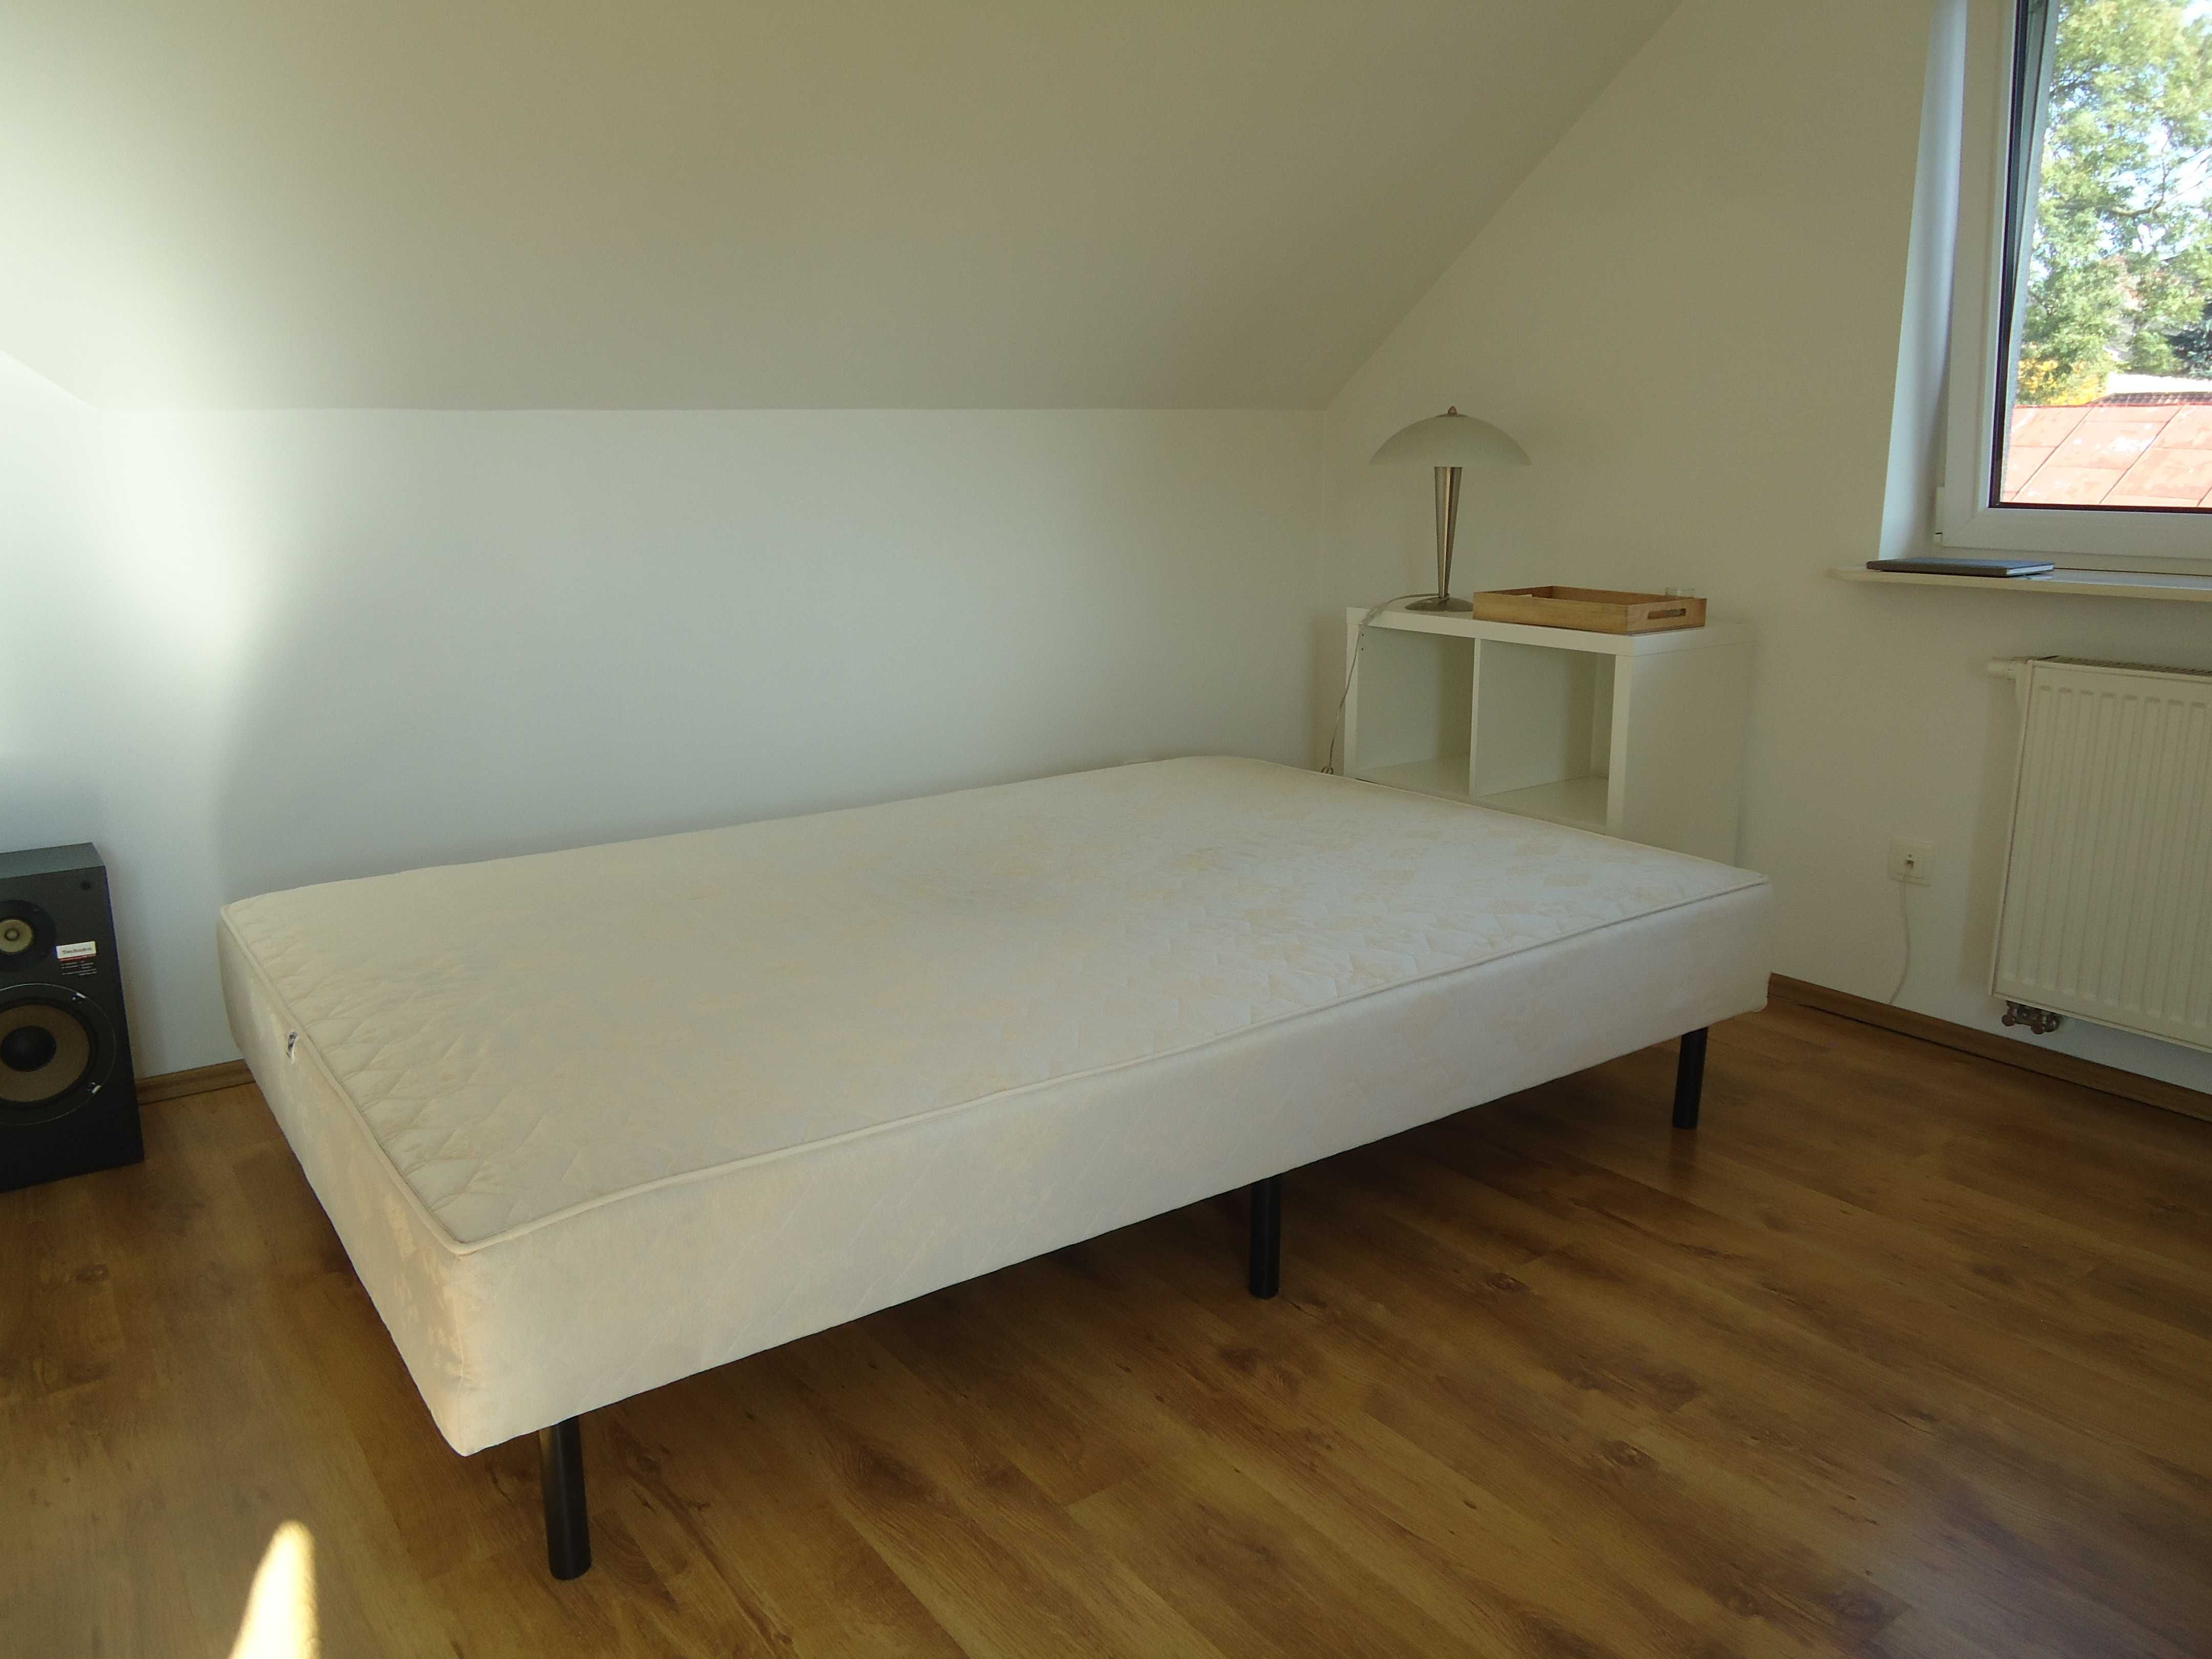 Łóżko na solidnej drewnianej ramie 140 x 210